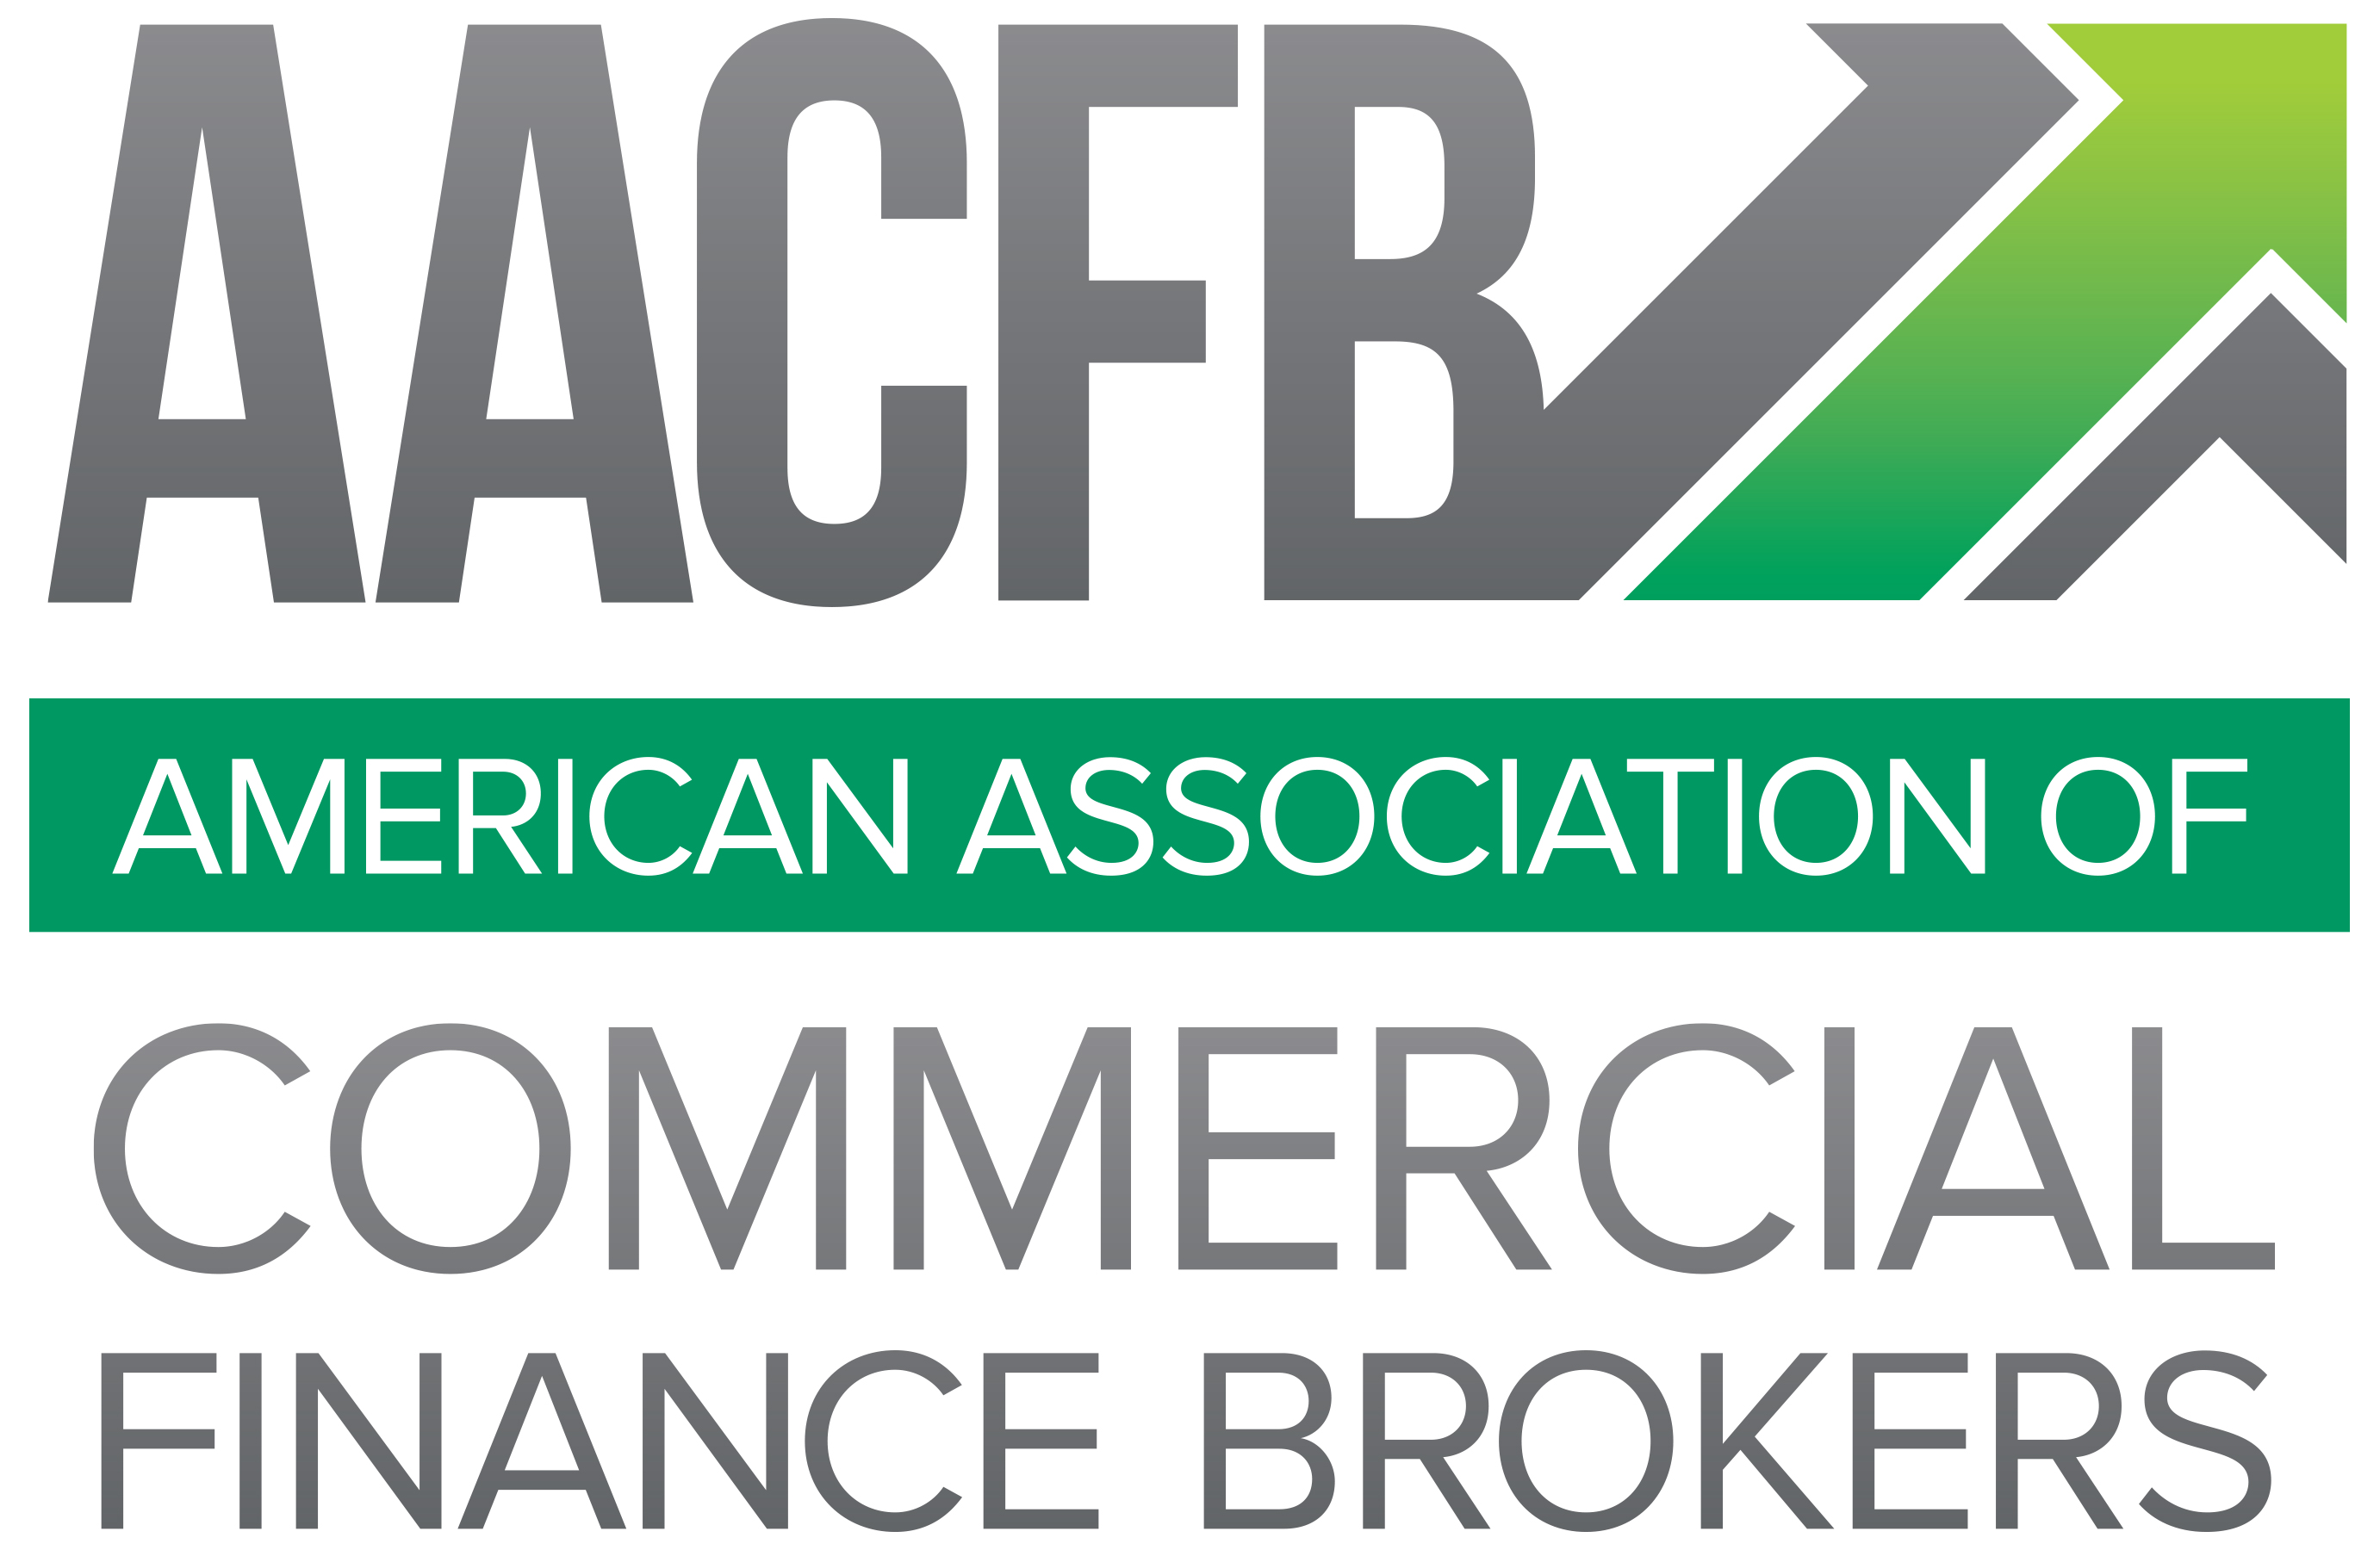 2020 AACFB Sponsorship